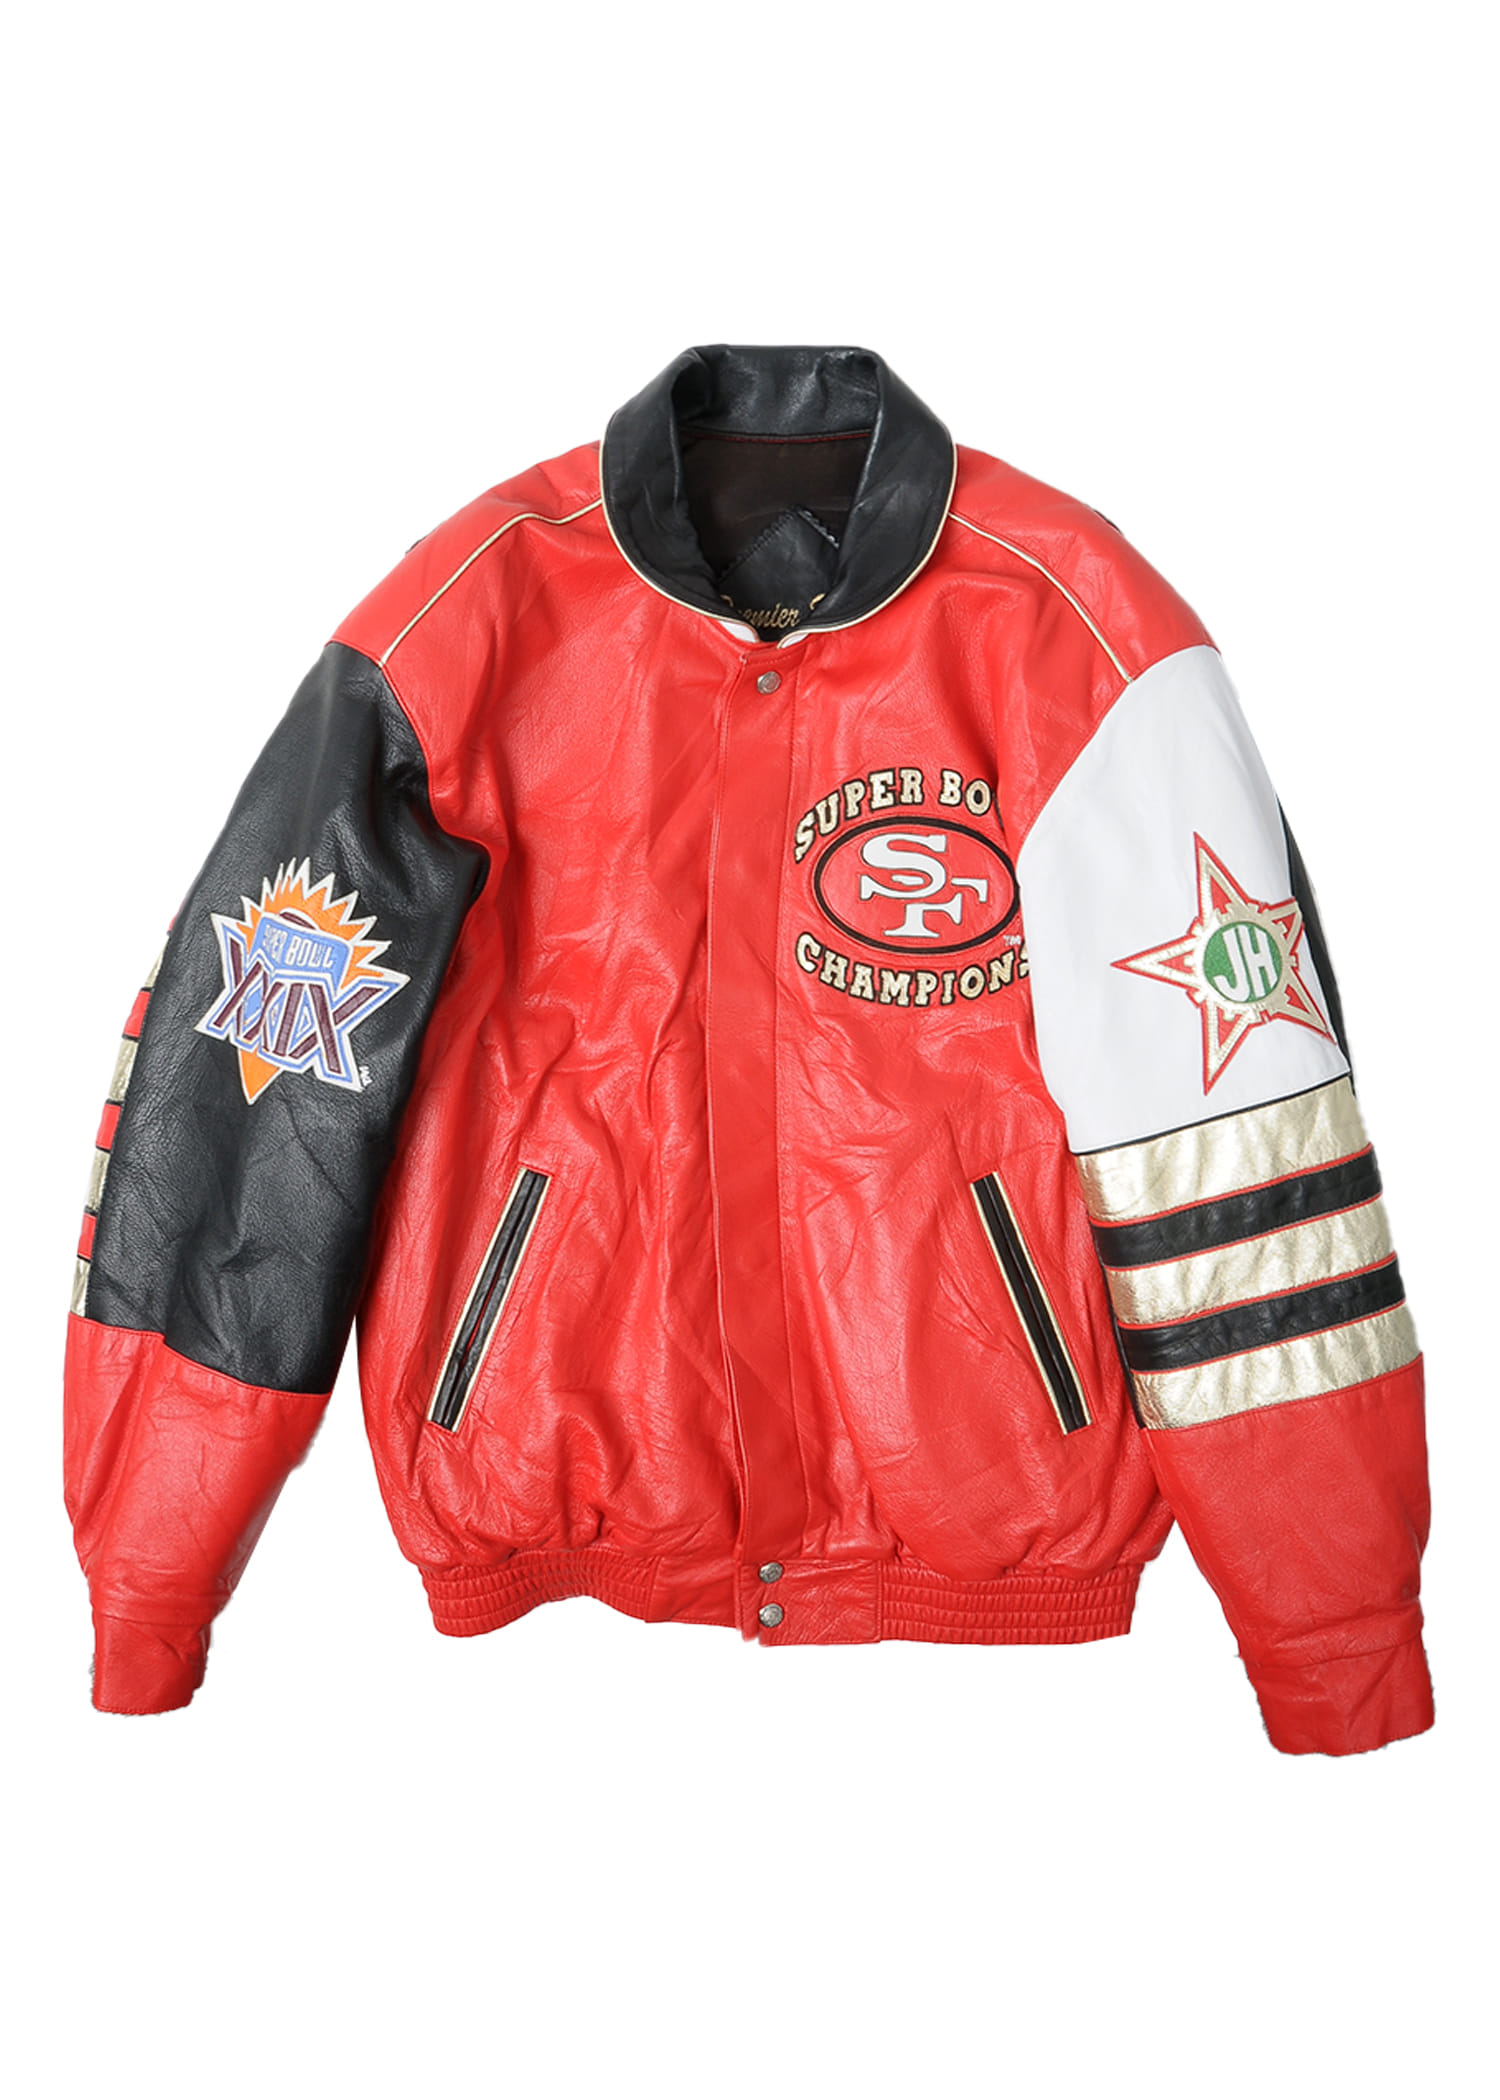 NFL all leather stadium jacket